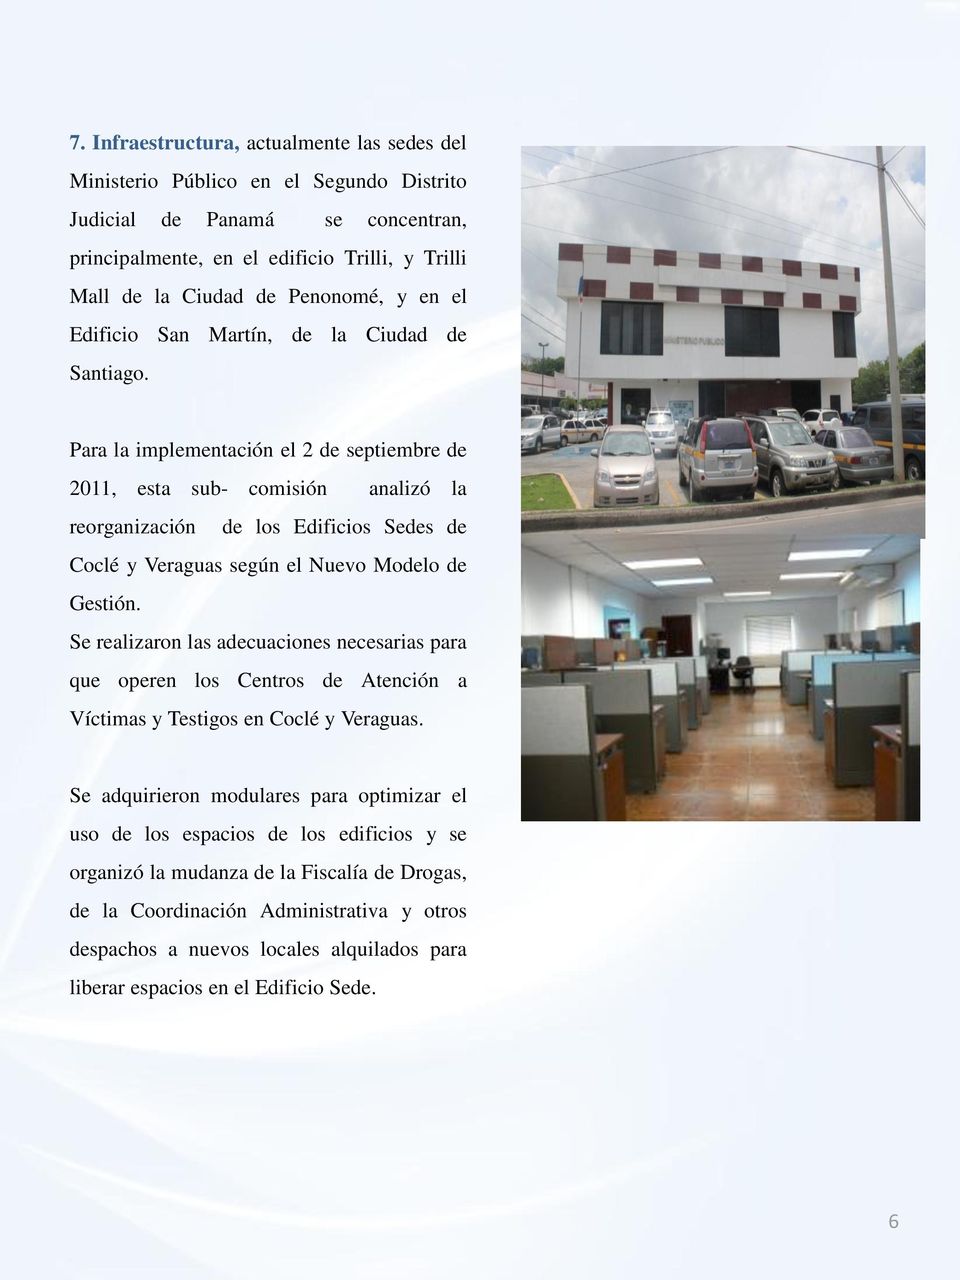 Para la implementación el 2 de septiembre de 2011, esta sub- comisión analizó la reorganización de los Edificios Sedes de Coclé y Veraguas según el Nuevo Modelo de Gestión.